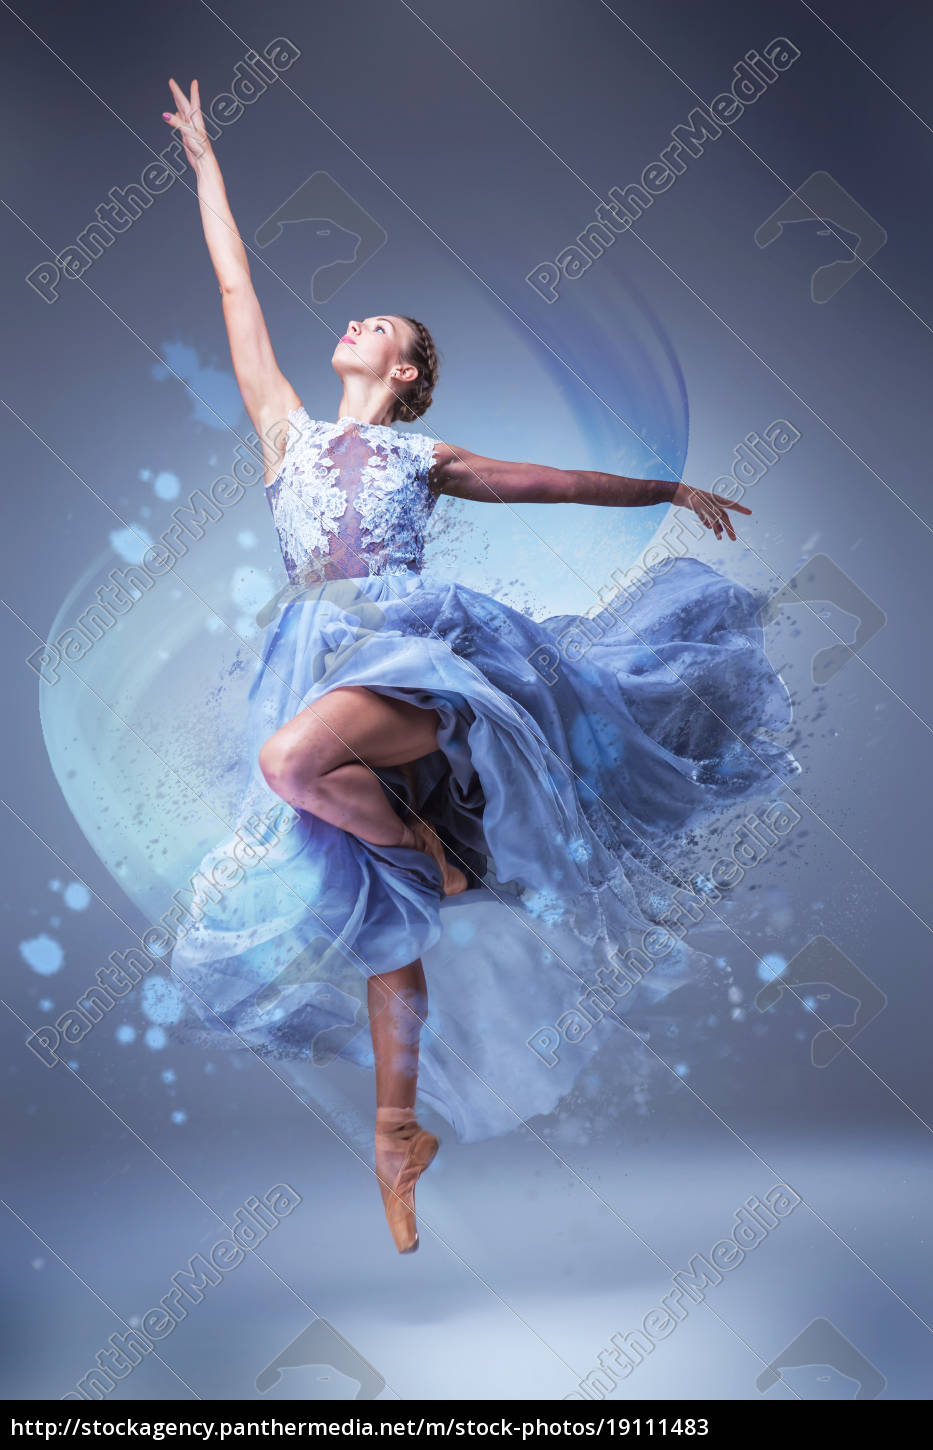 Den smukke ballerina danser i blå lang kjole - Royalty Free #19111483 | PantherMedia Billedbureau